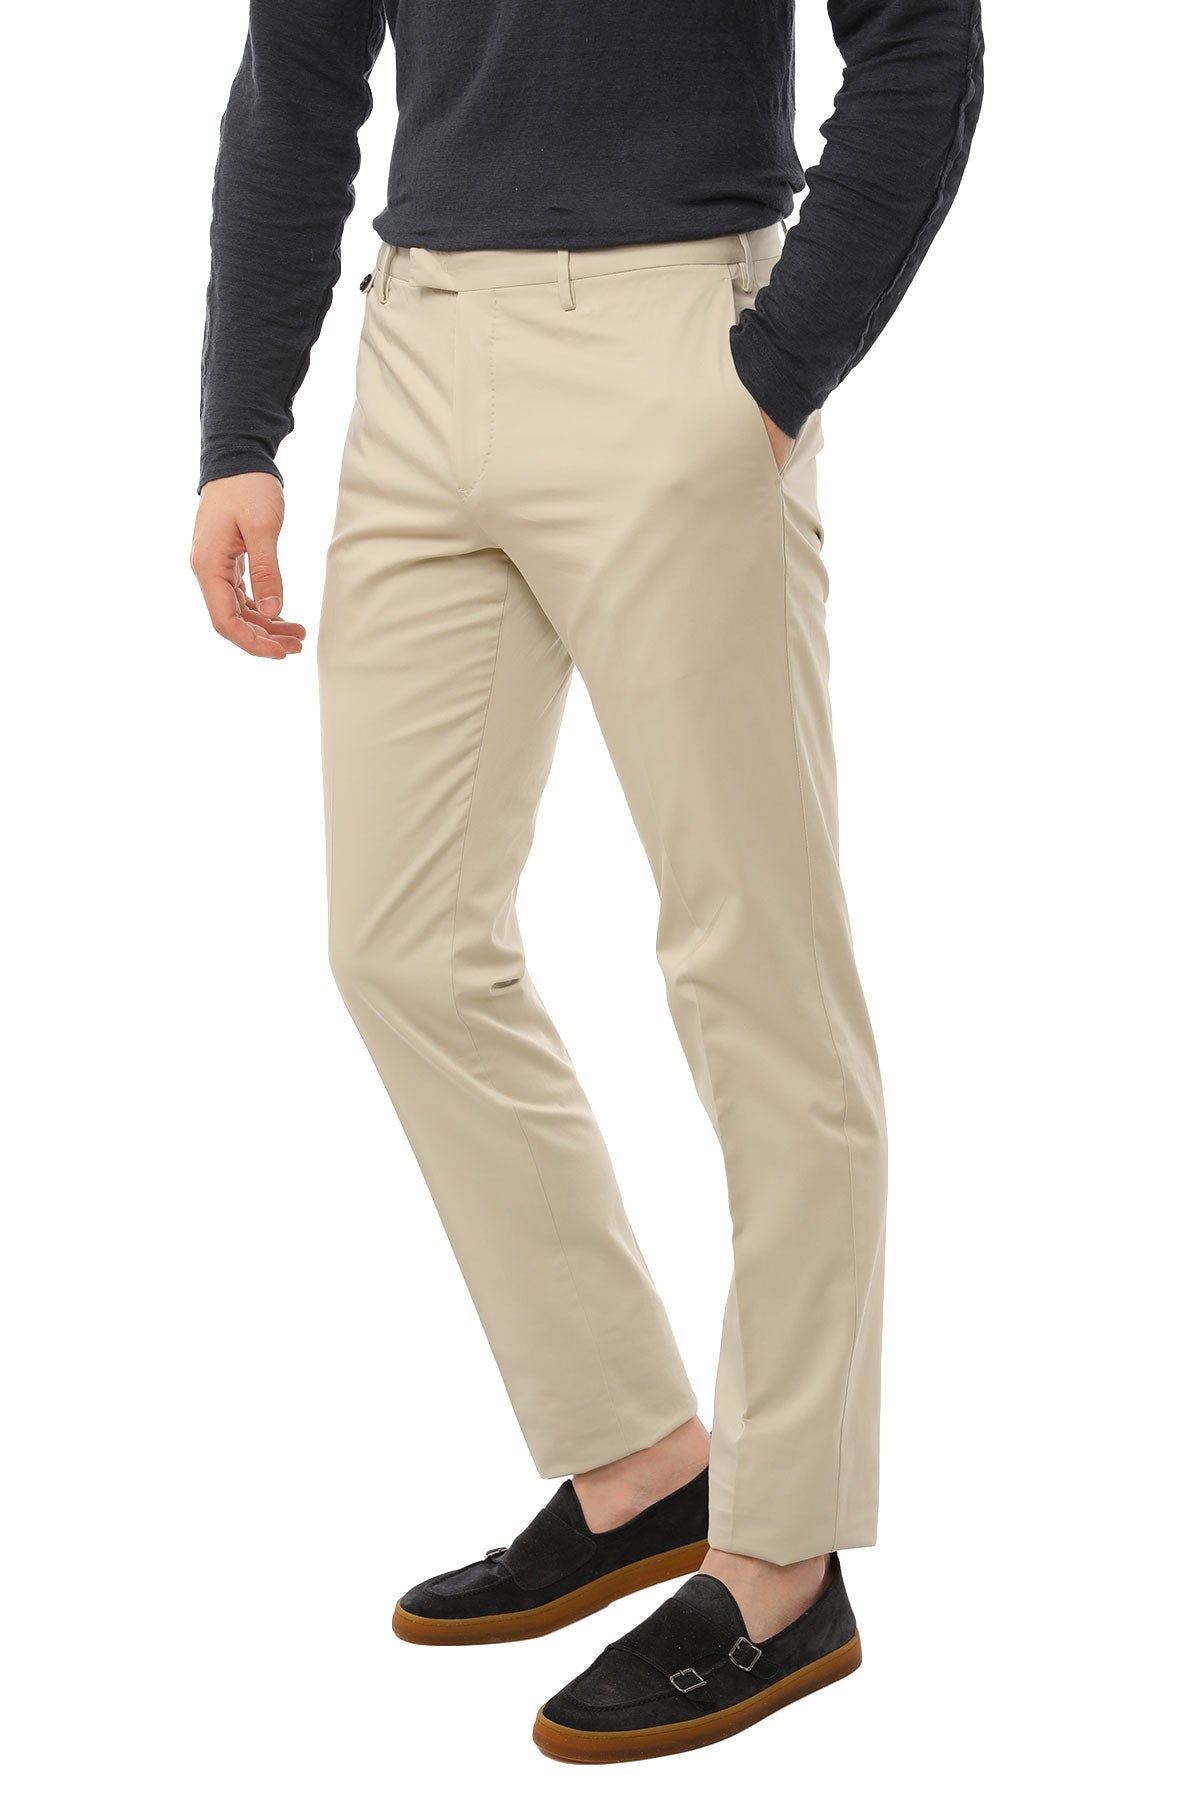 Pantaloni Torino Clear Fit Pantolon-Libas Trendy Fashion Store